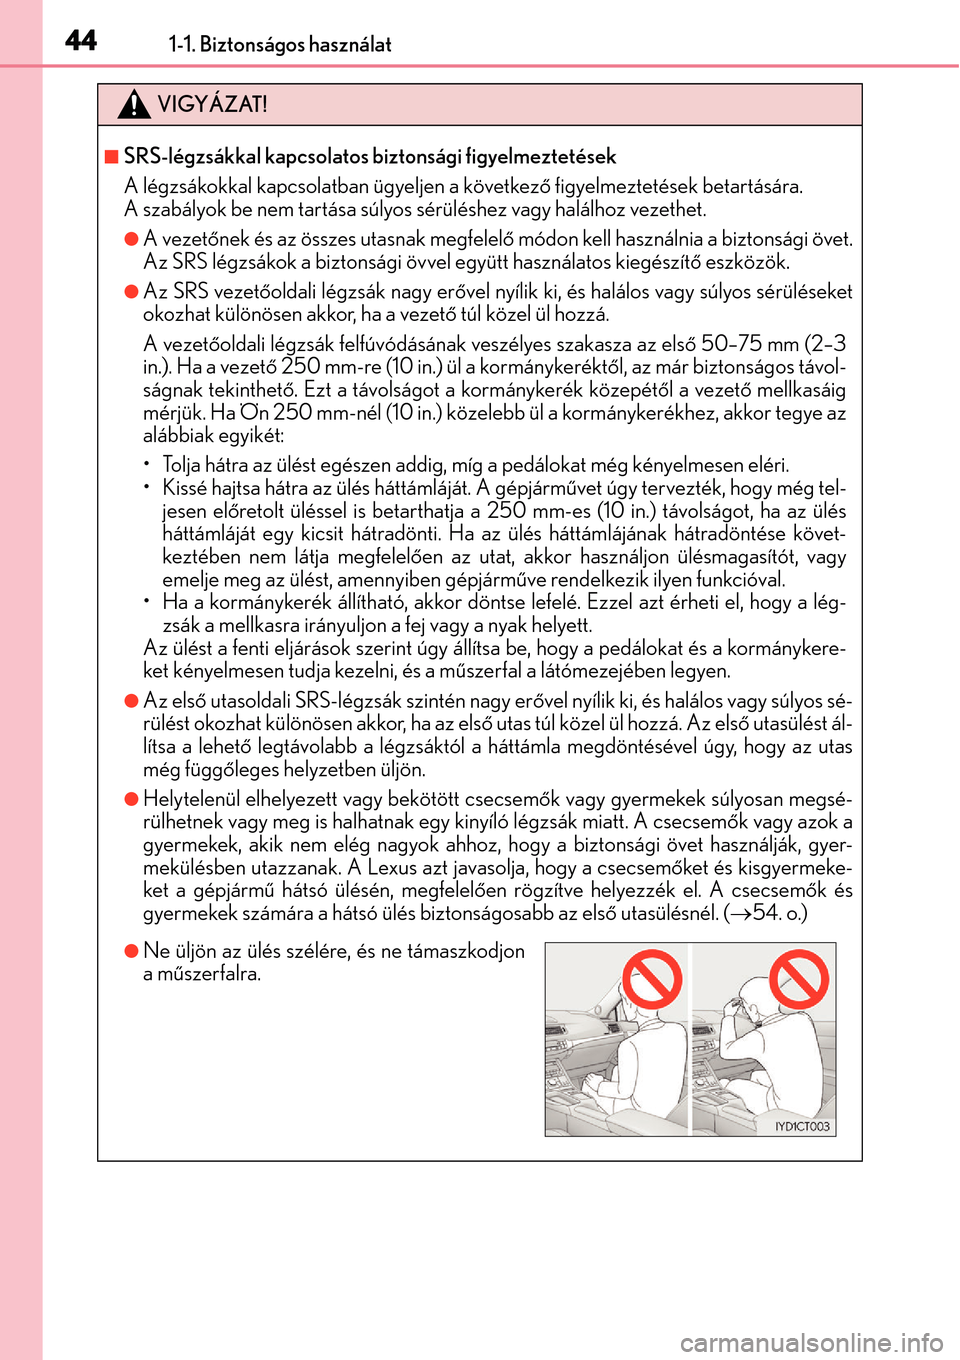 Lexus CT200h 2014  Kezelési útmutató (in Hungarian) 441-1. Biztonságos használat
VIGYÁZAT!
SRS-légzsákkal kapcsolatos biztonsági figyelmeztetések
A légzsákokkal kapcsolatban ügyeljen a következő figyelmeztetések betartására. 
A szabá